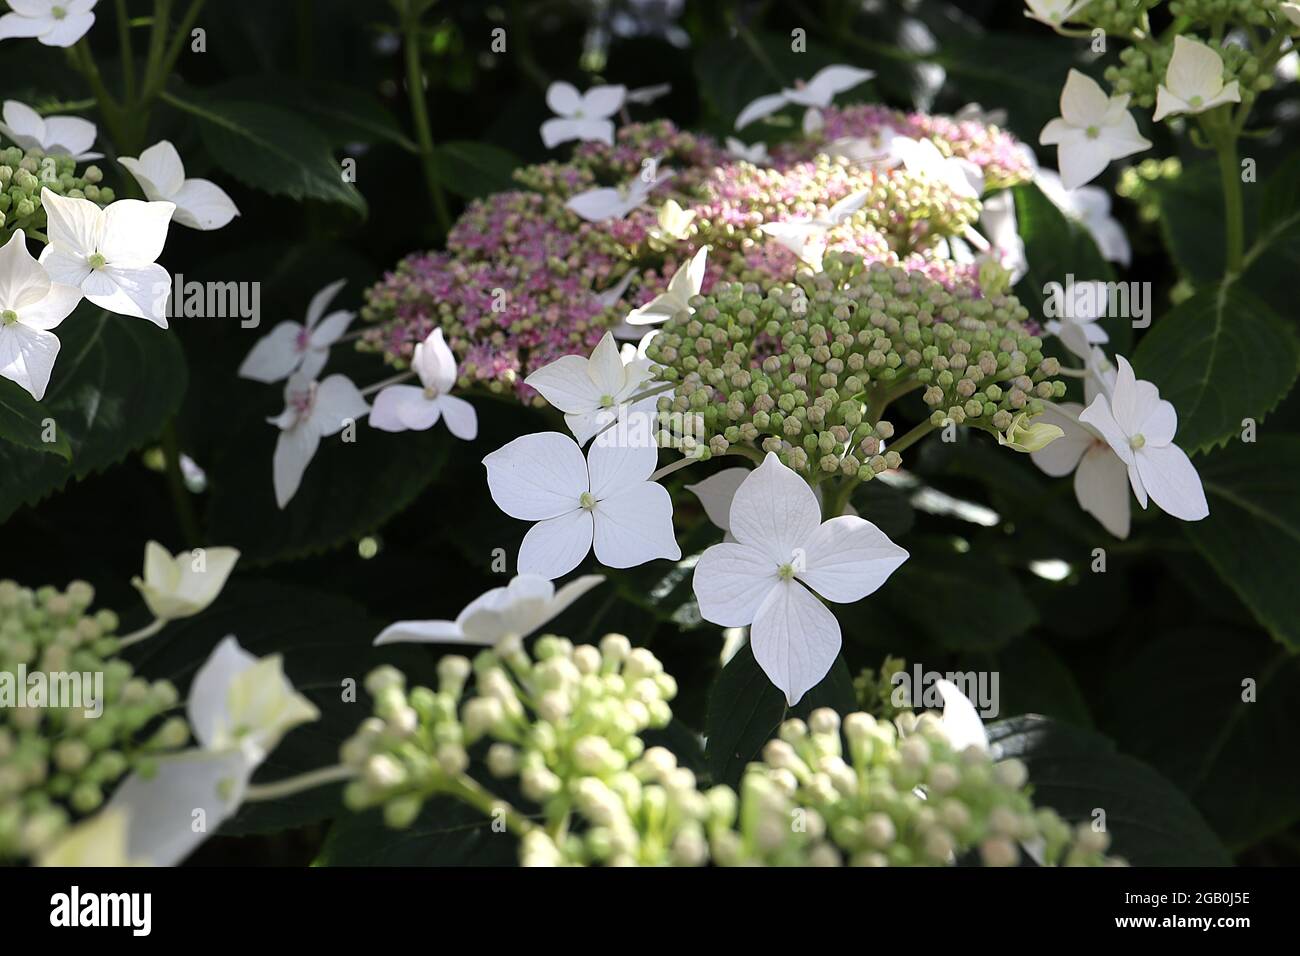 Hortensia Lanarth White – fleurs blanches et petits amas de fleurs roses, juin, Angleterre, Royaume-Uni Banque D'Images